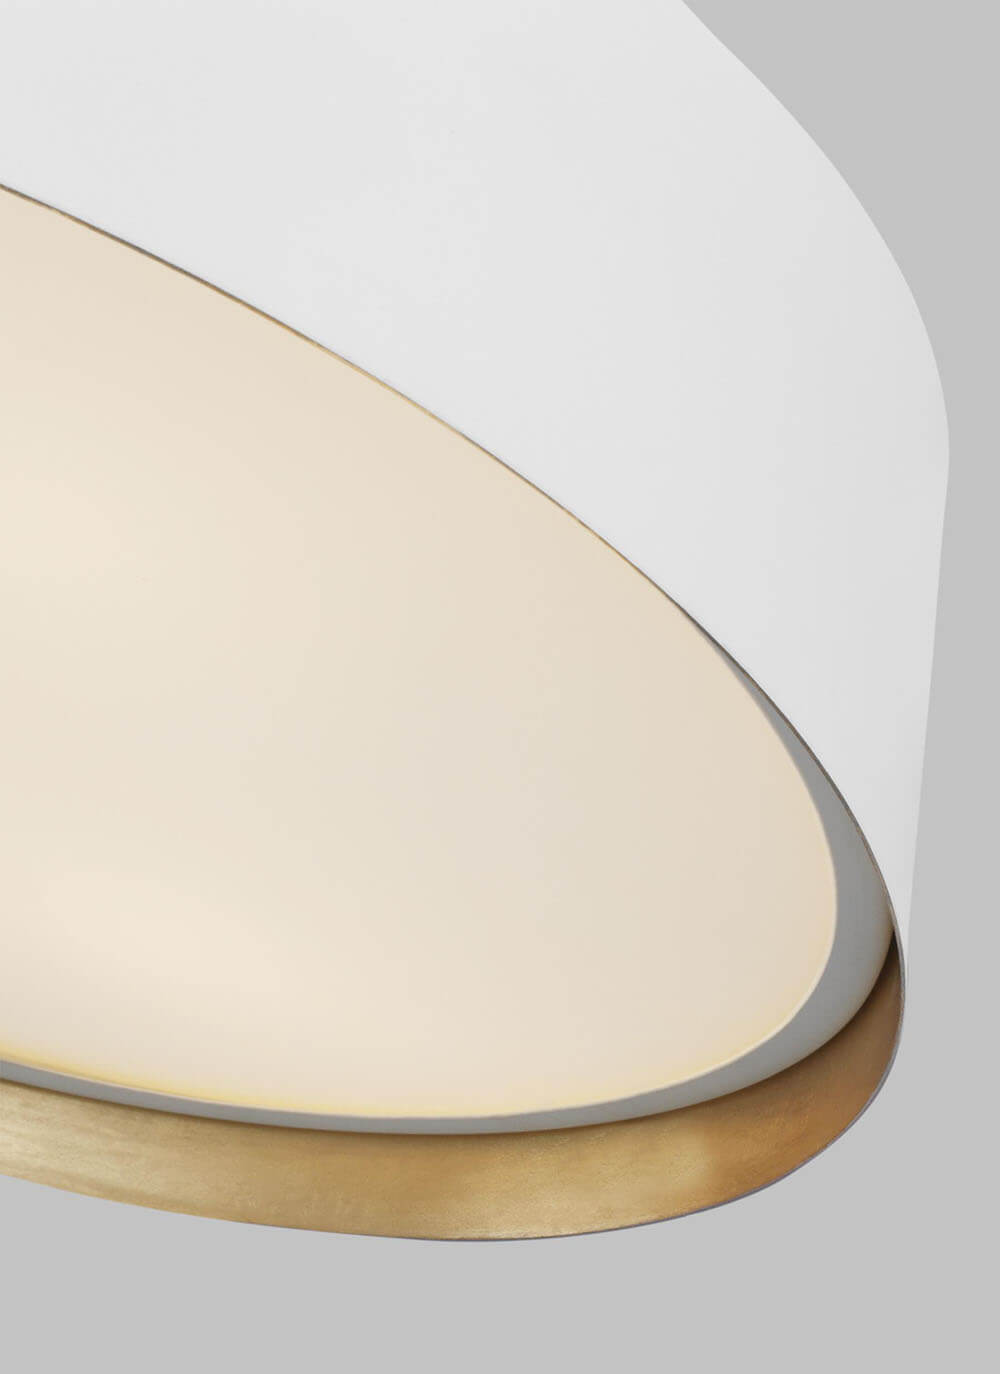 Inner gold details on the matte white, minimal flush mount lighting.